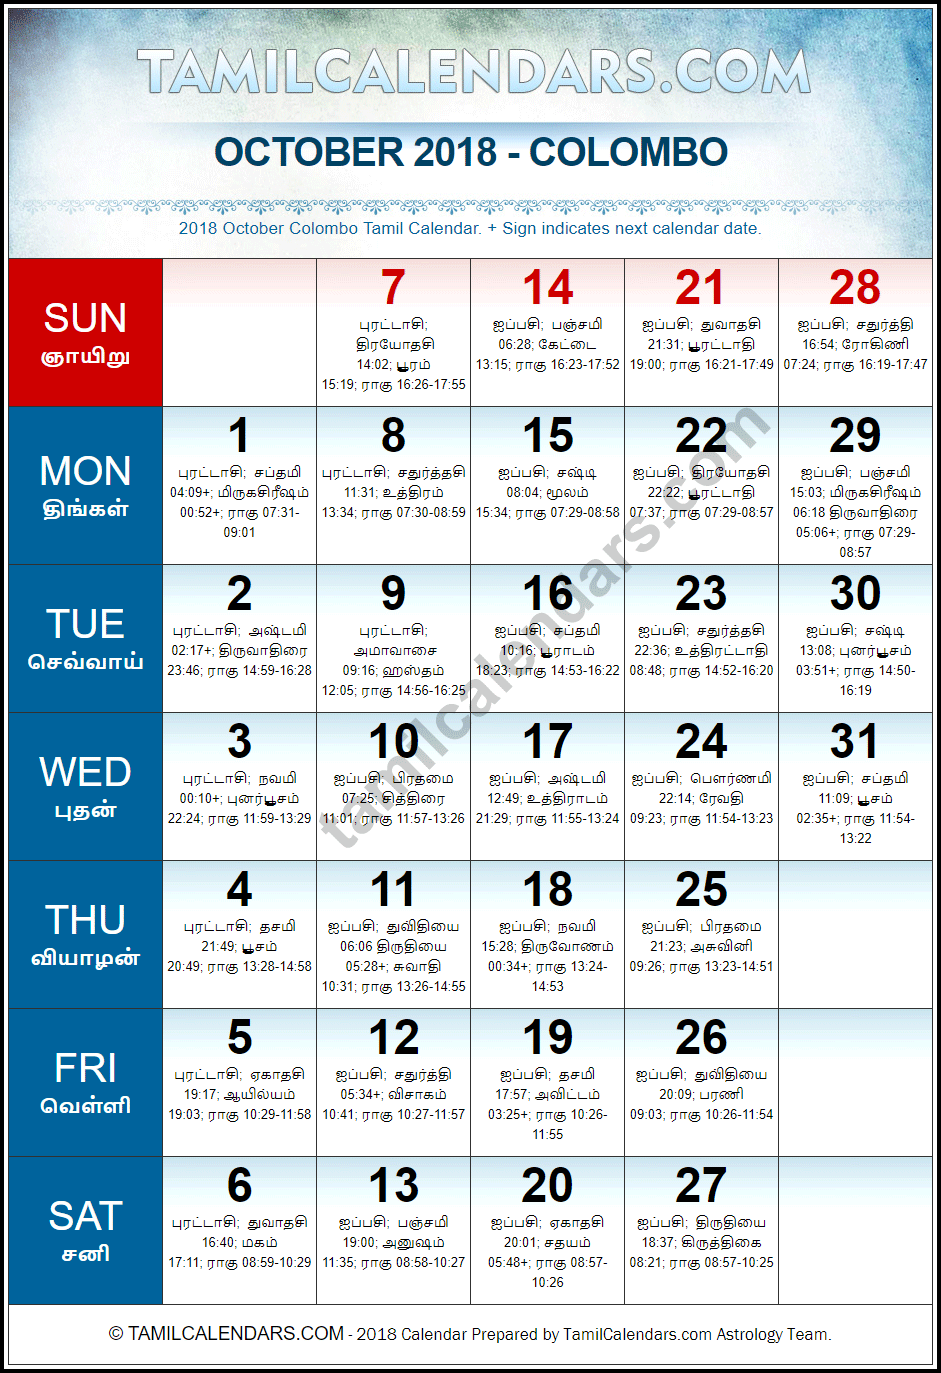 October 2018 Tamil Calendar for Sri Lanka (Colombo)